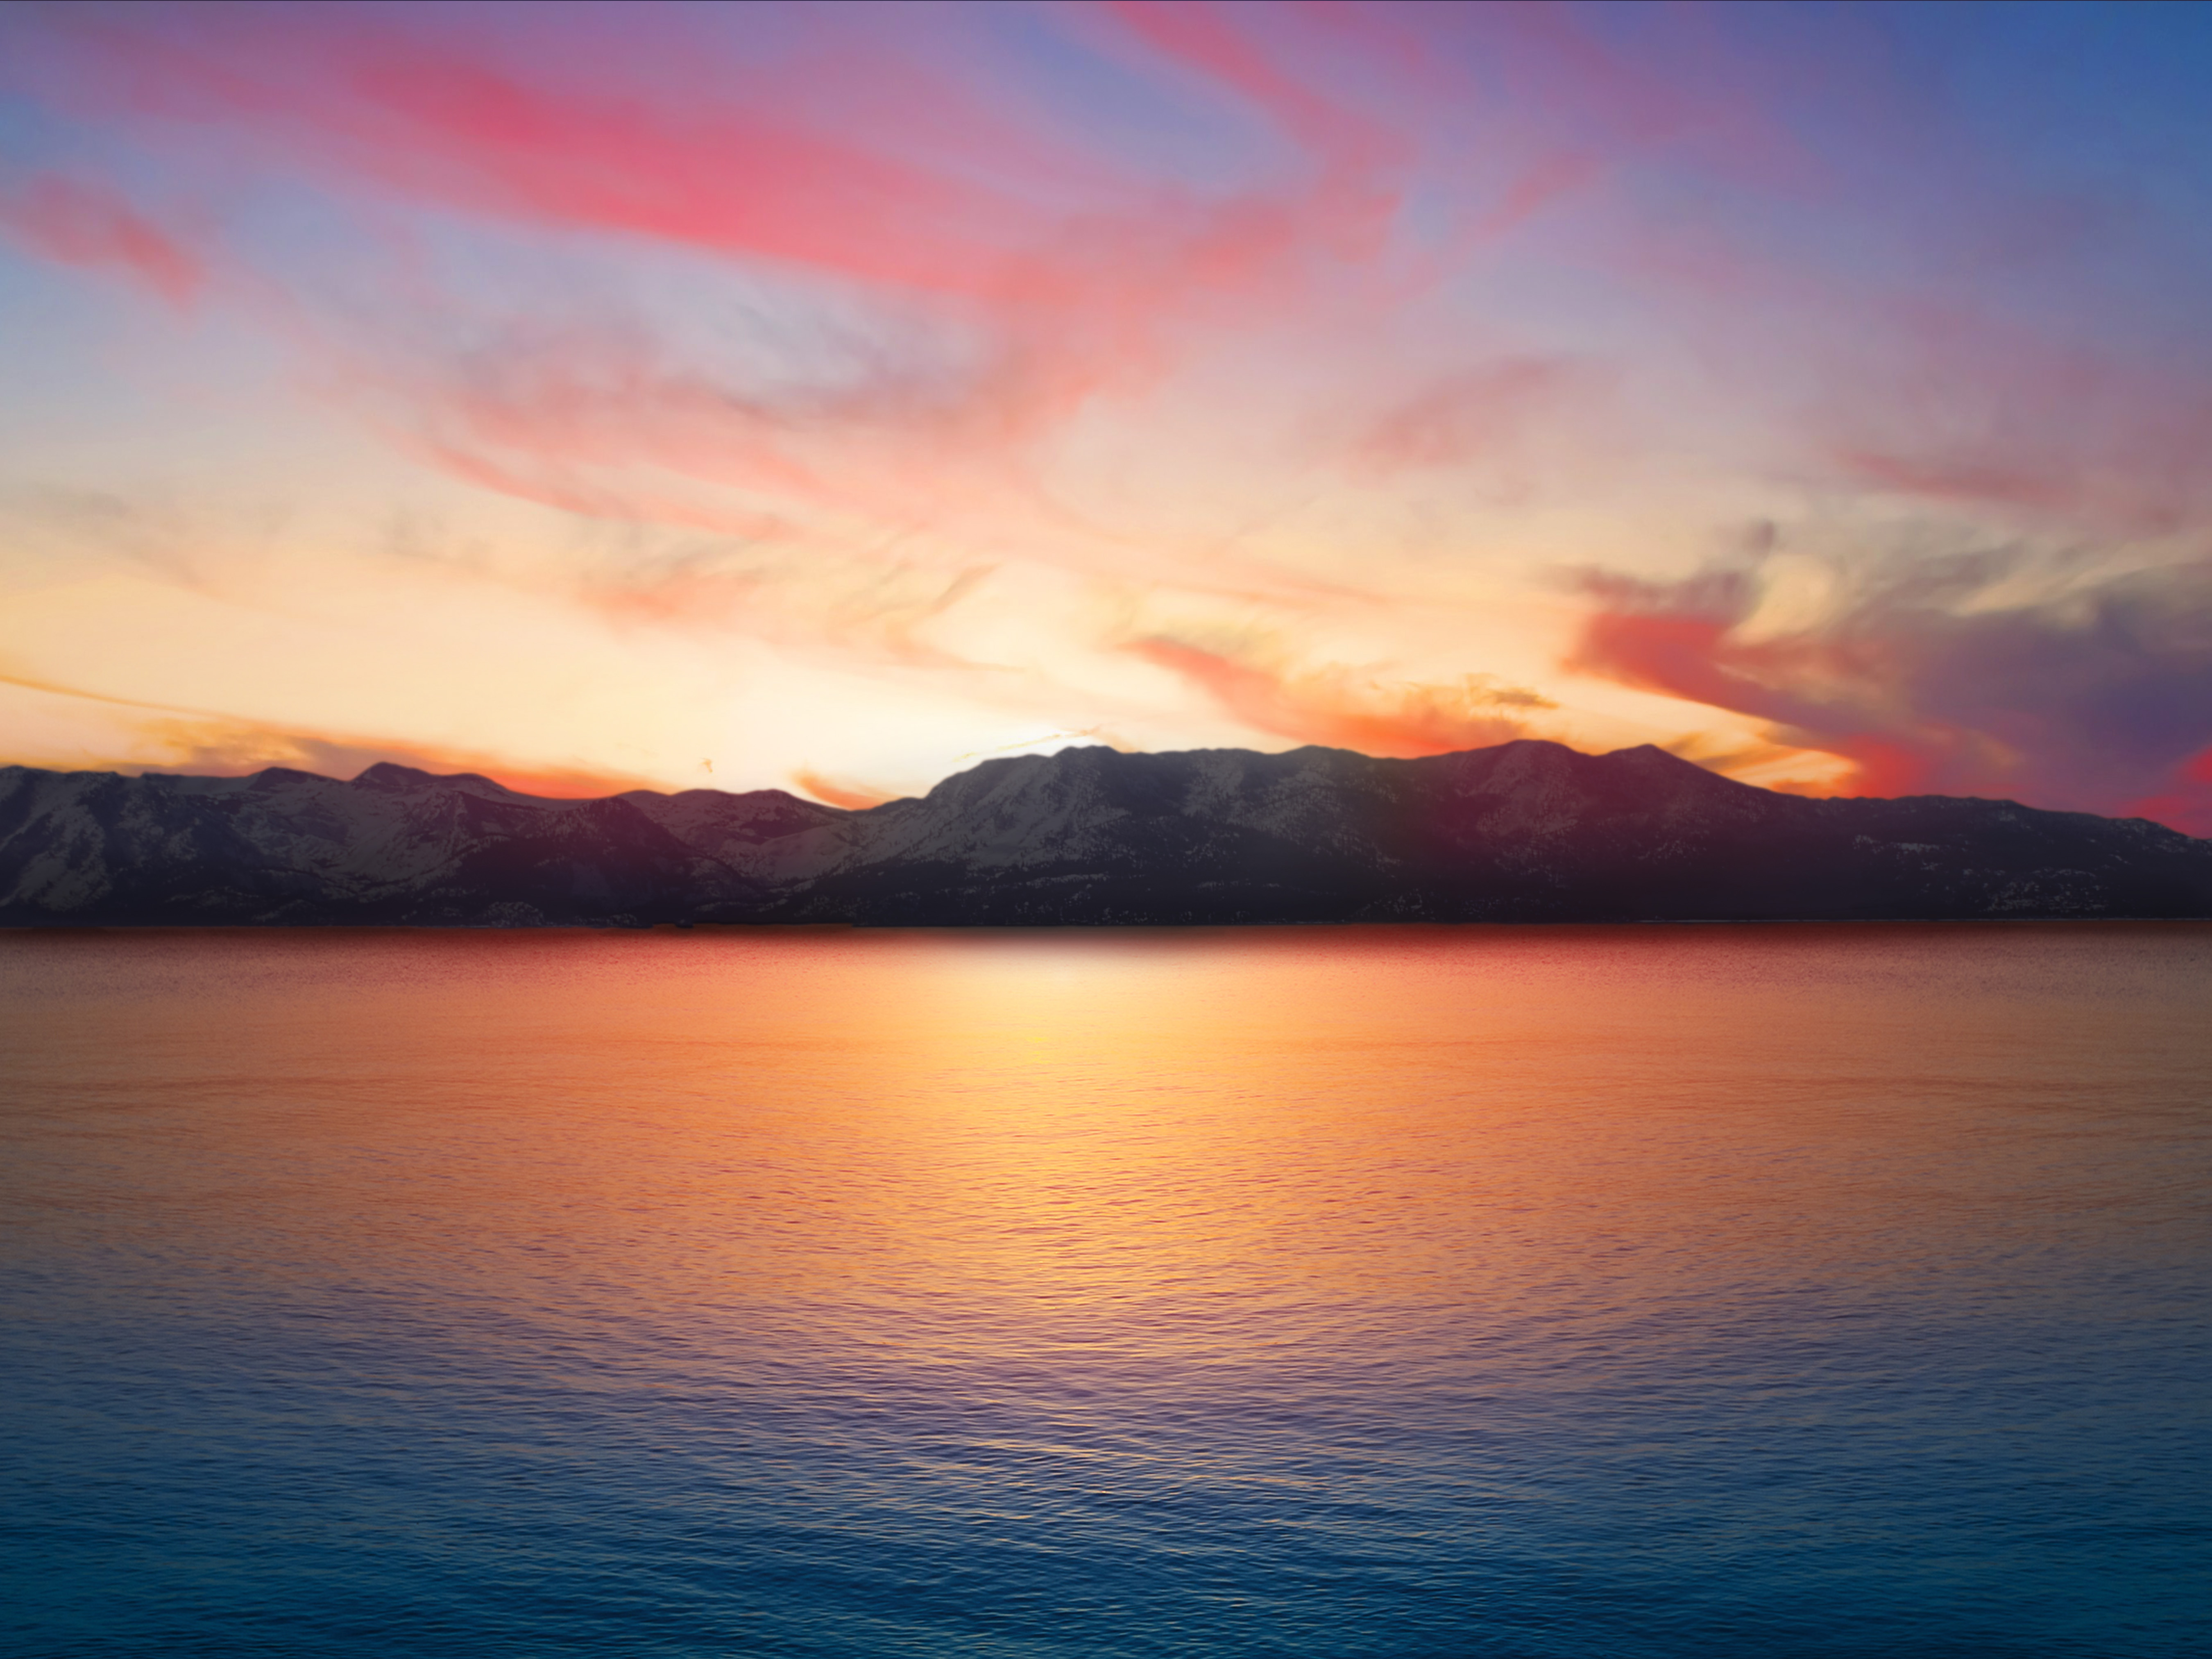 Lake Tahoe at Sunset